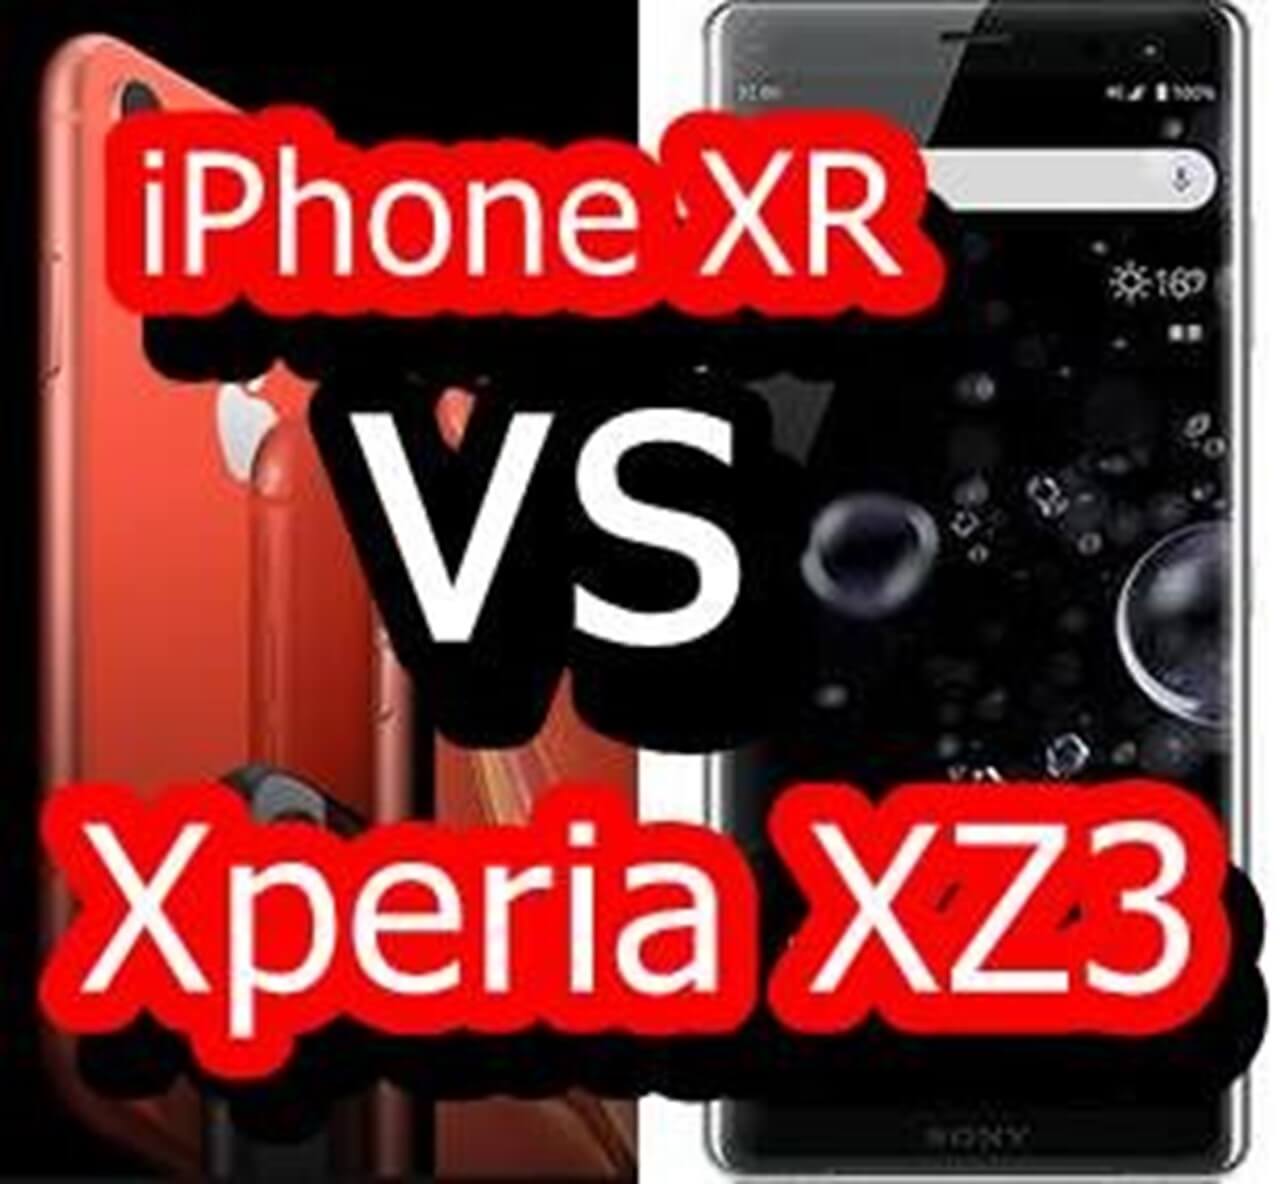 iPhone XRとXperia XZ3